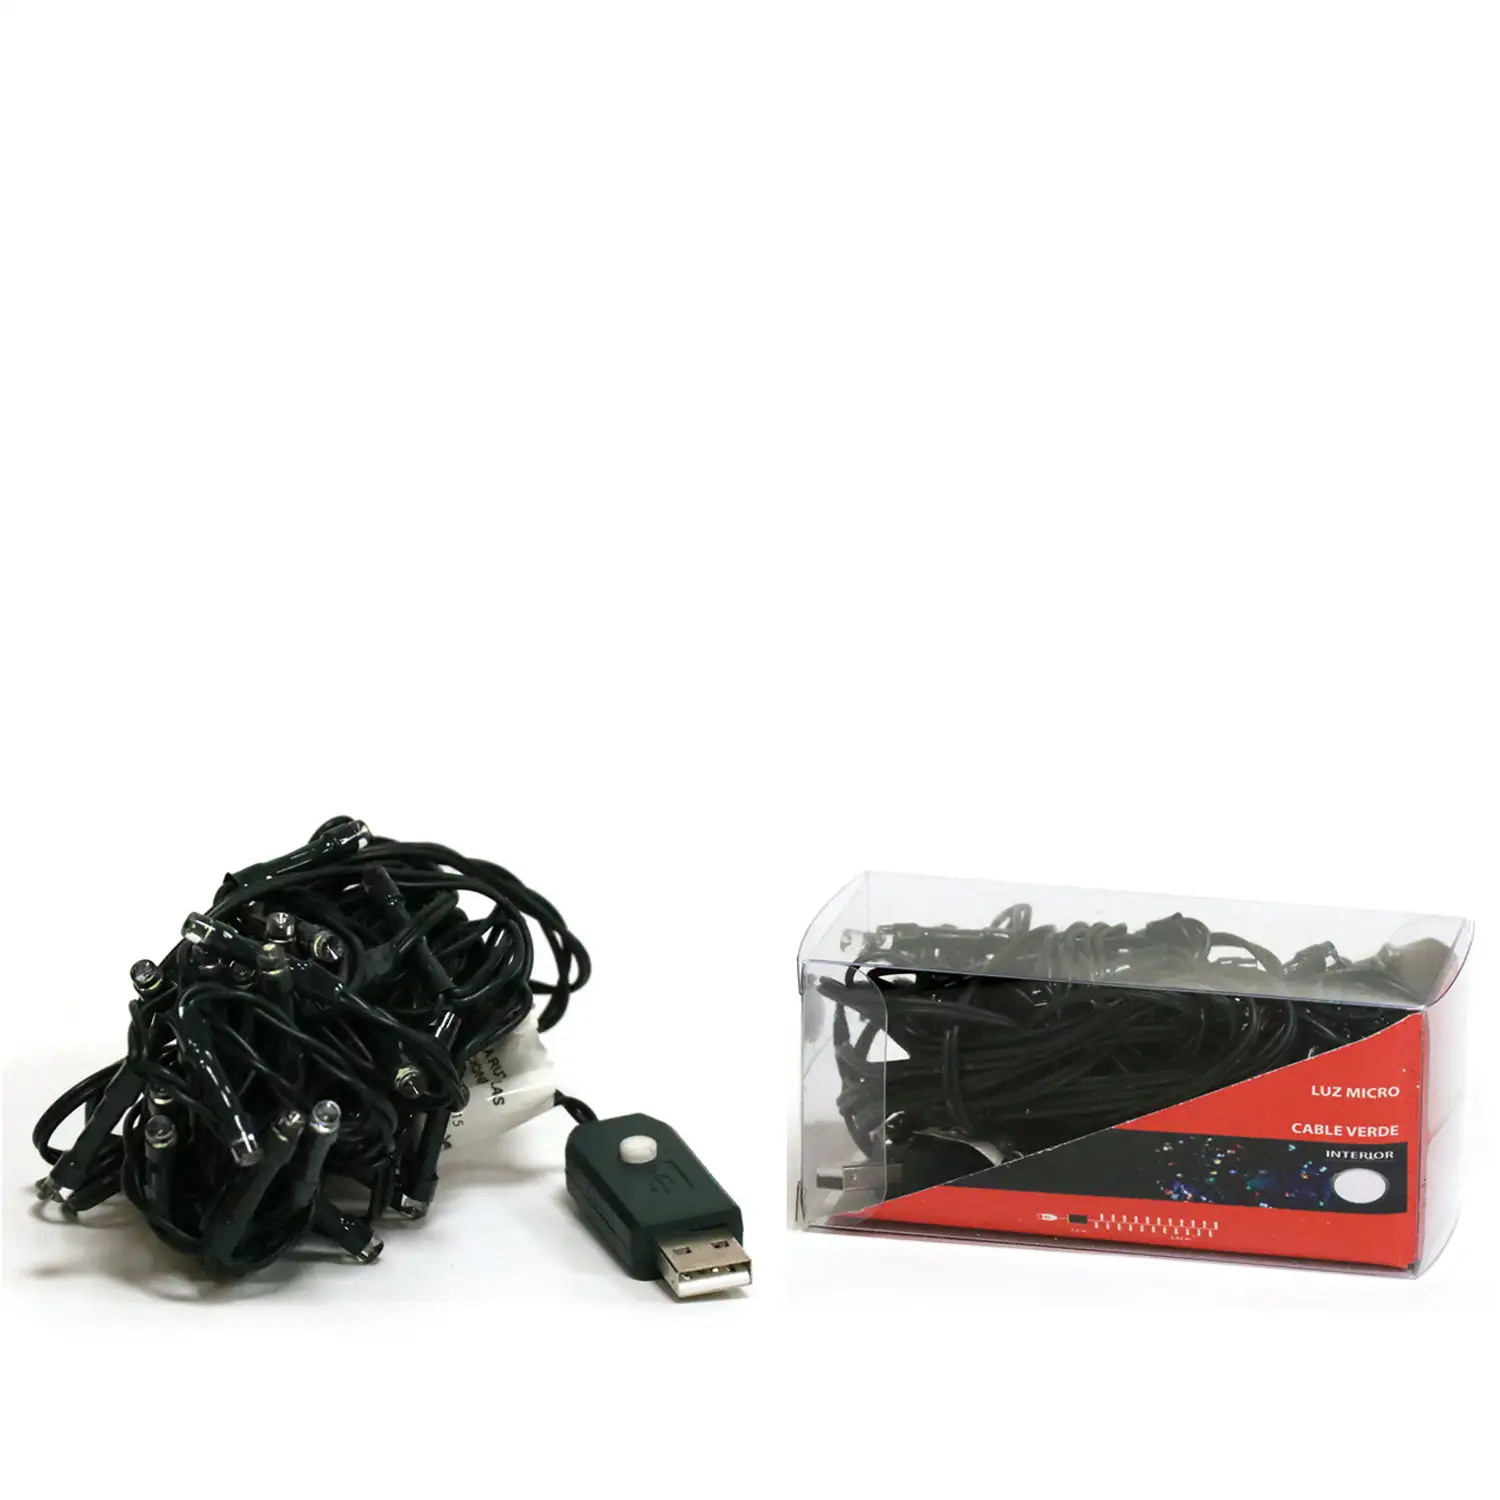 LUCES MICRO 100L LED COLOR CON USB CABLE VERDE INTERIOR 7.95M (24)